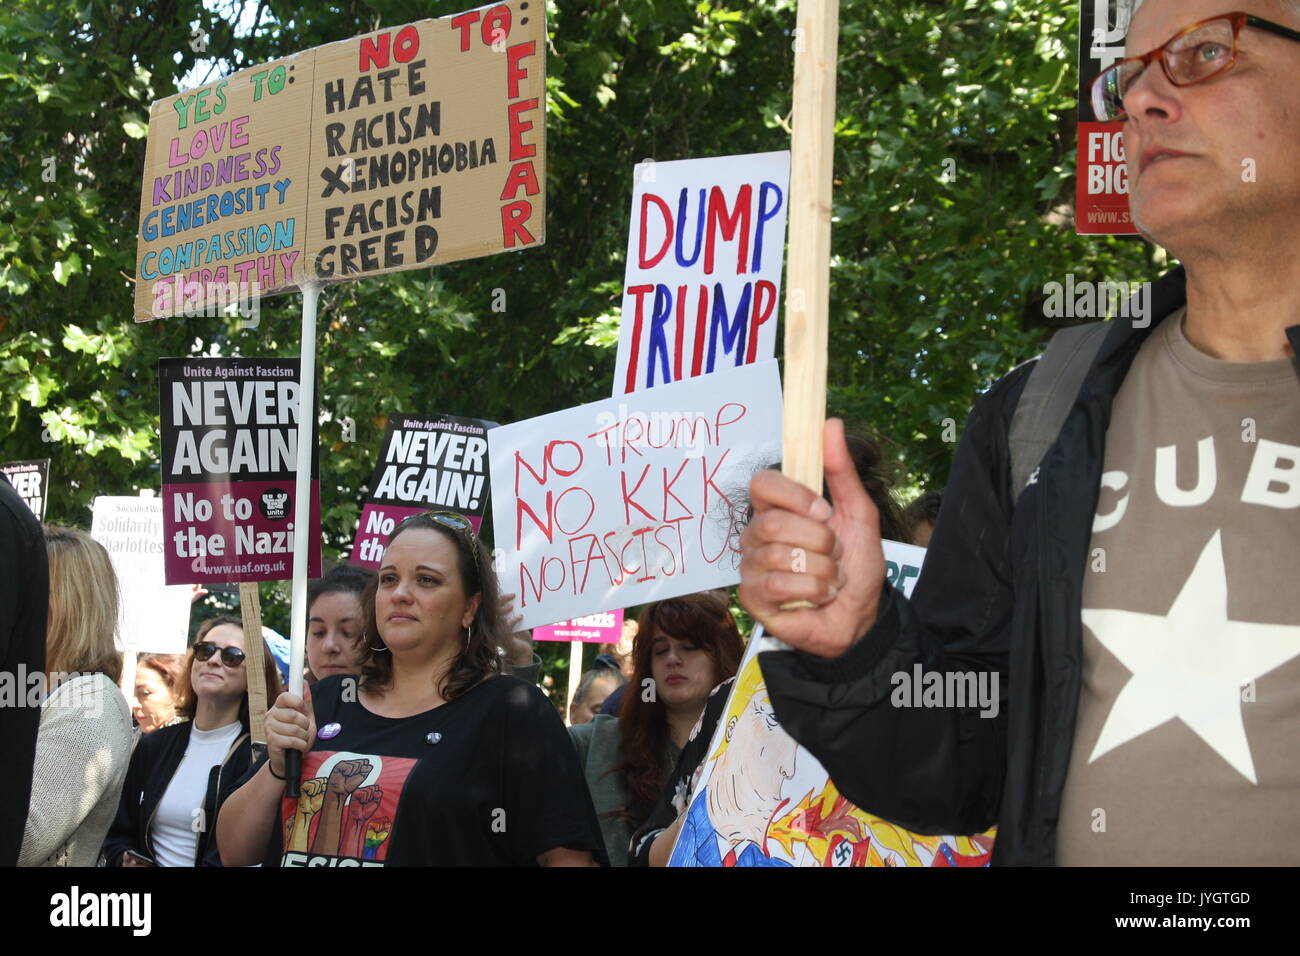 Londra, UK, 19 agosto 2017. Una protesta contro la Donald Trump's recenti dichiarazioni contro Krea e circa gli eventi di charlottesville avviene al di fuori dell'ambasciata americana a Londra. Roland Ravenhill/Alamy Live News. Foto Stock